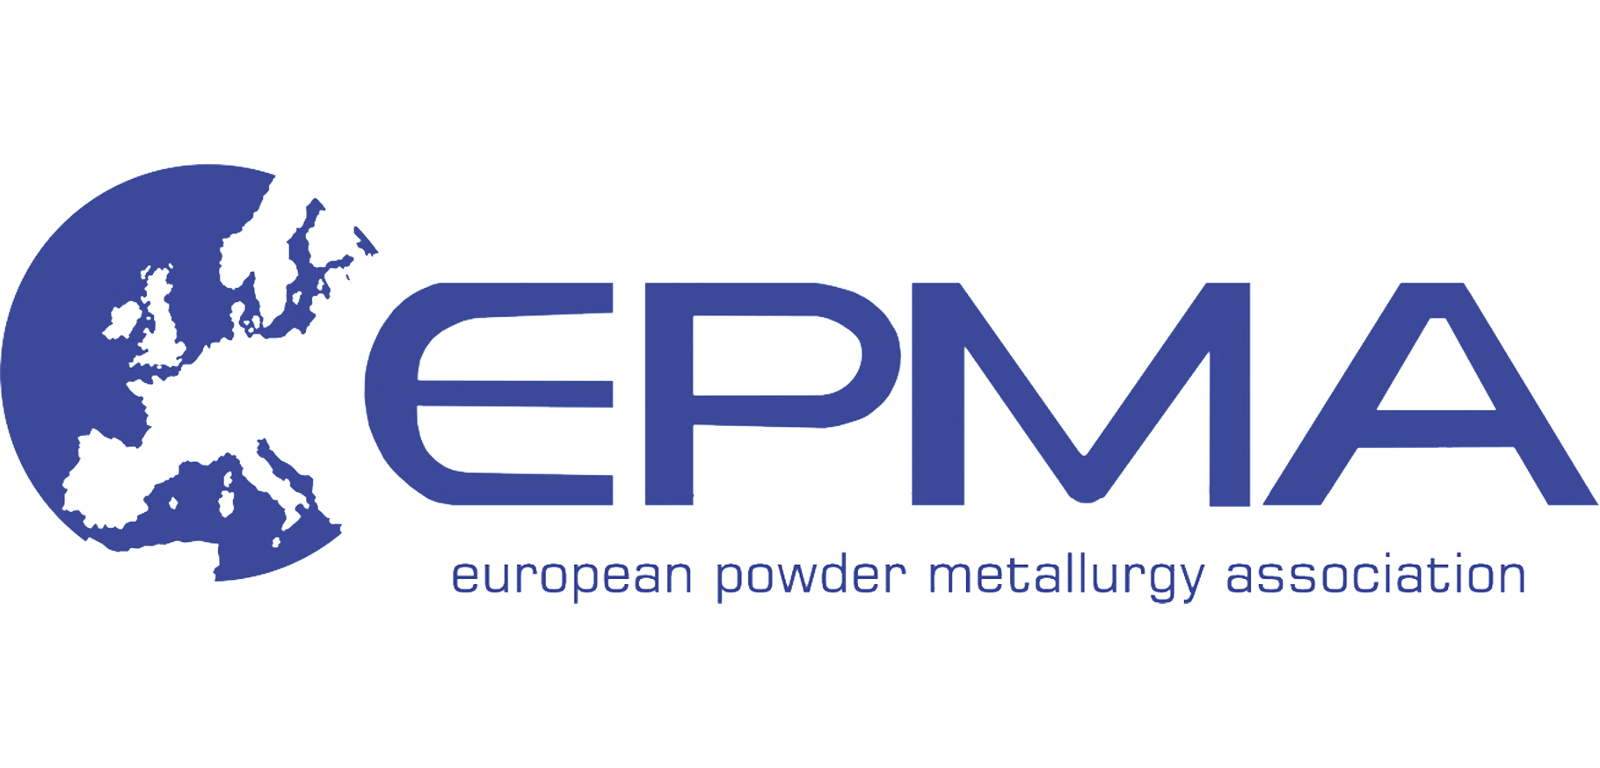 pollen_am_joins_europeen_powder_metallurgy_association